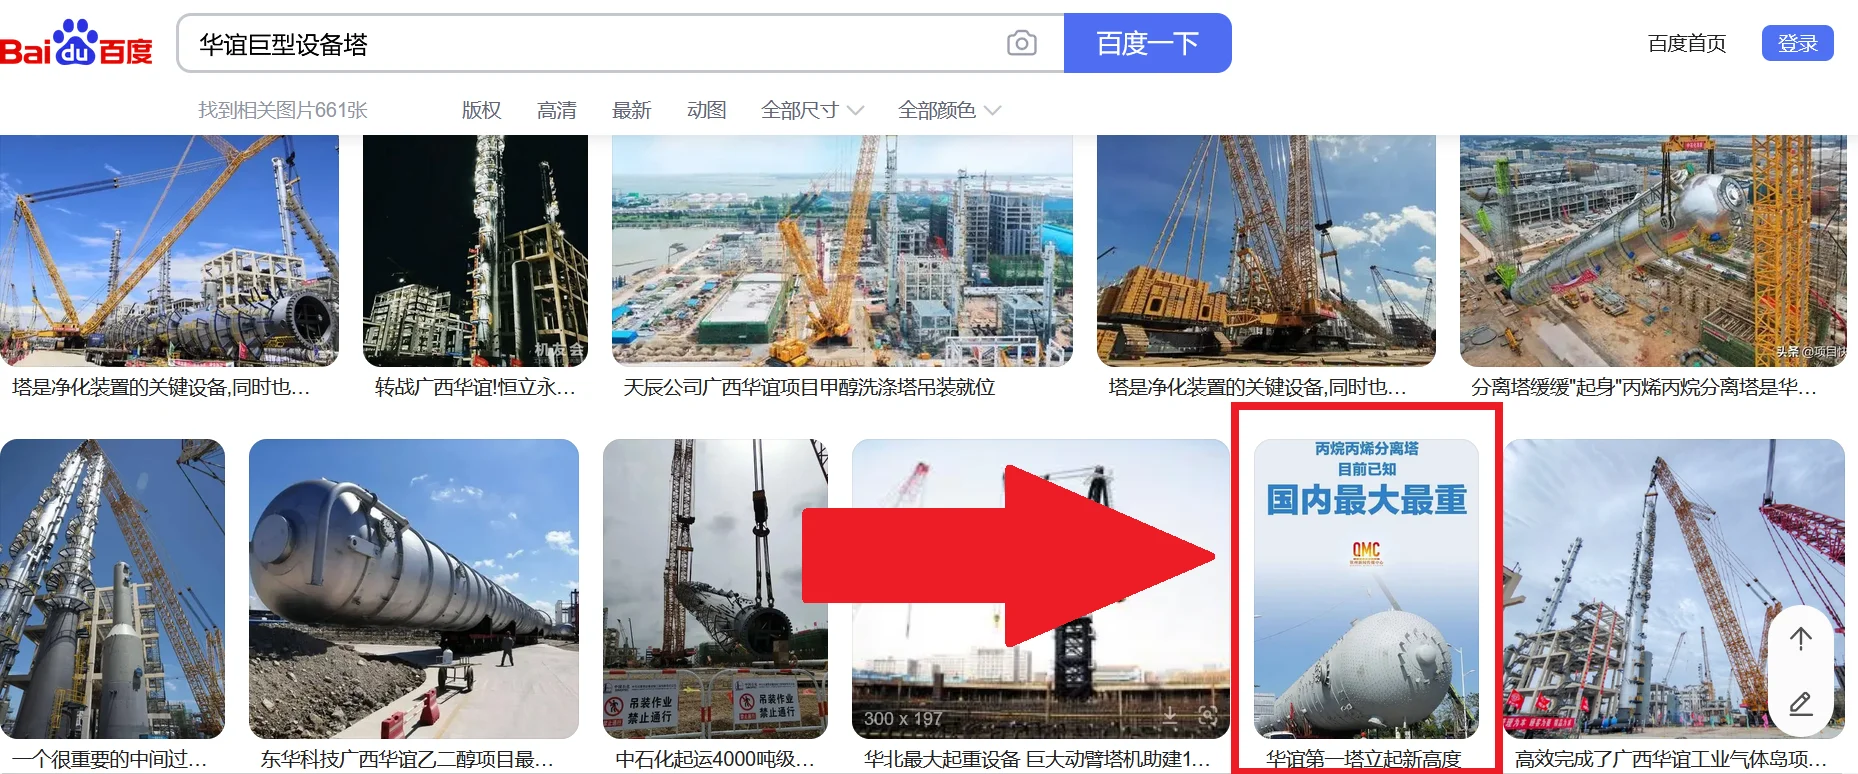 Wynik wyszukiwania kolumny w Baidu